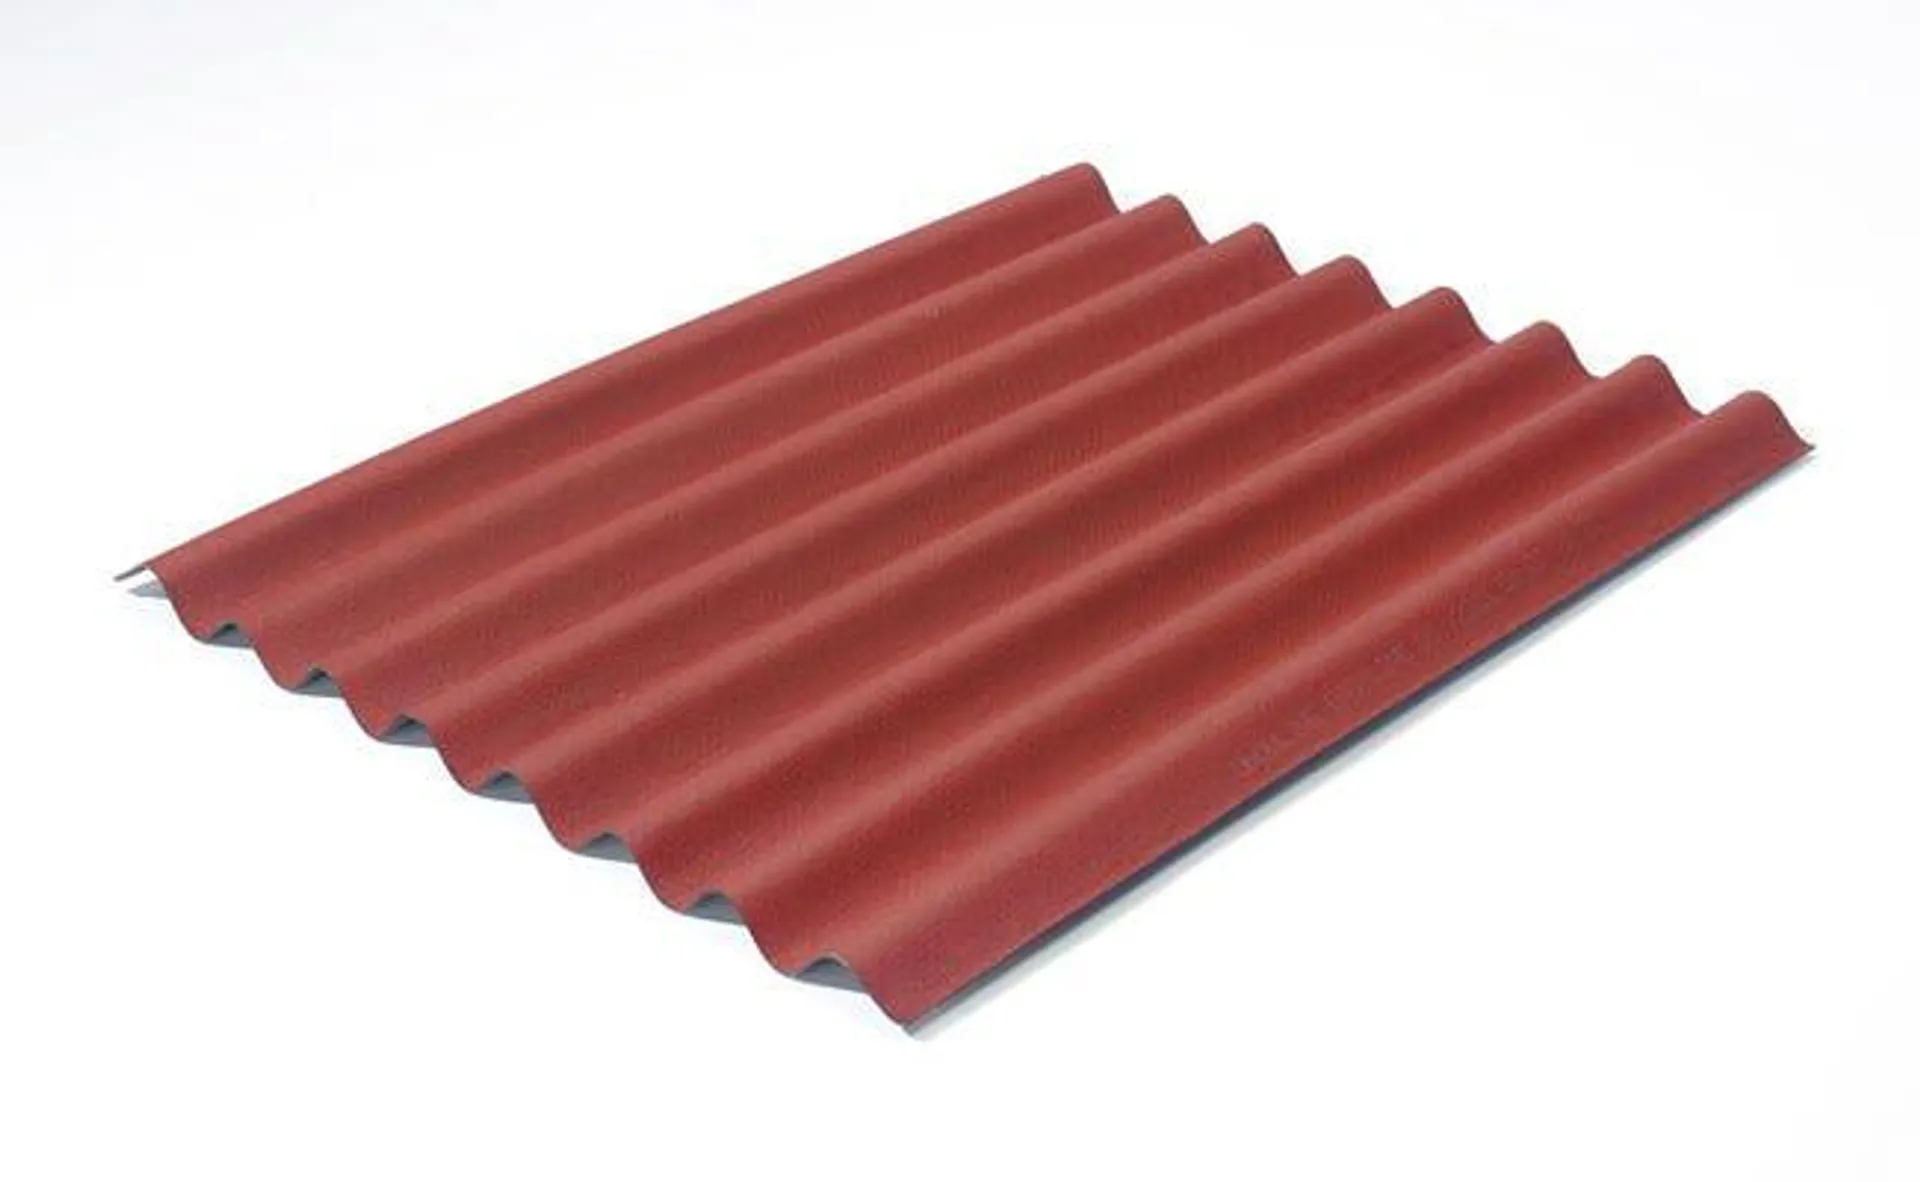 Lastra ONDULINE Easyline in bitume 76 x 100 cm, Sp 2.6 mm rosso Vedi i dettagli del prodotto